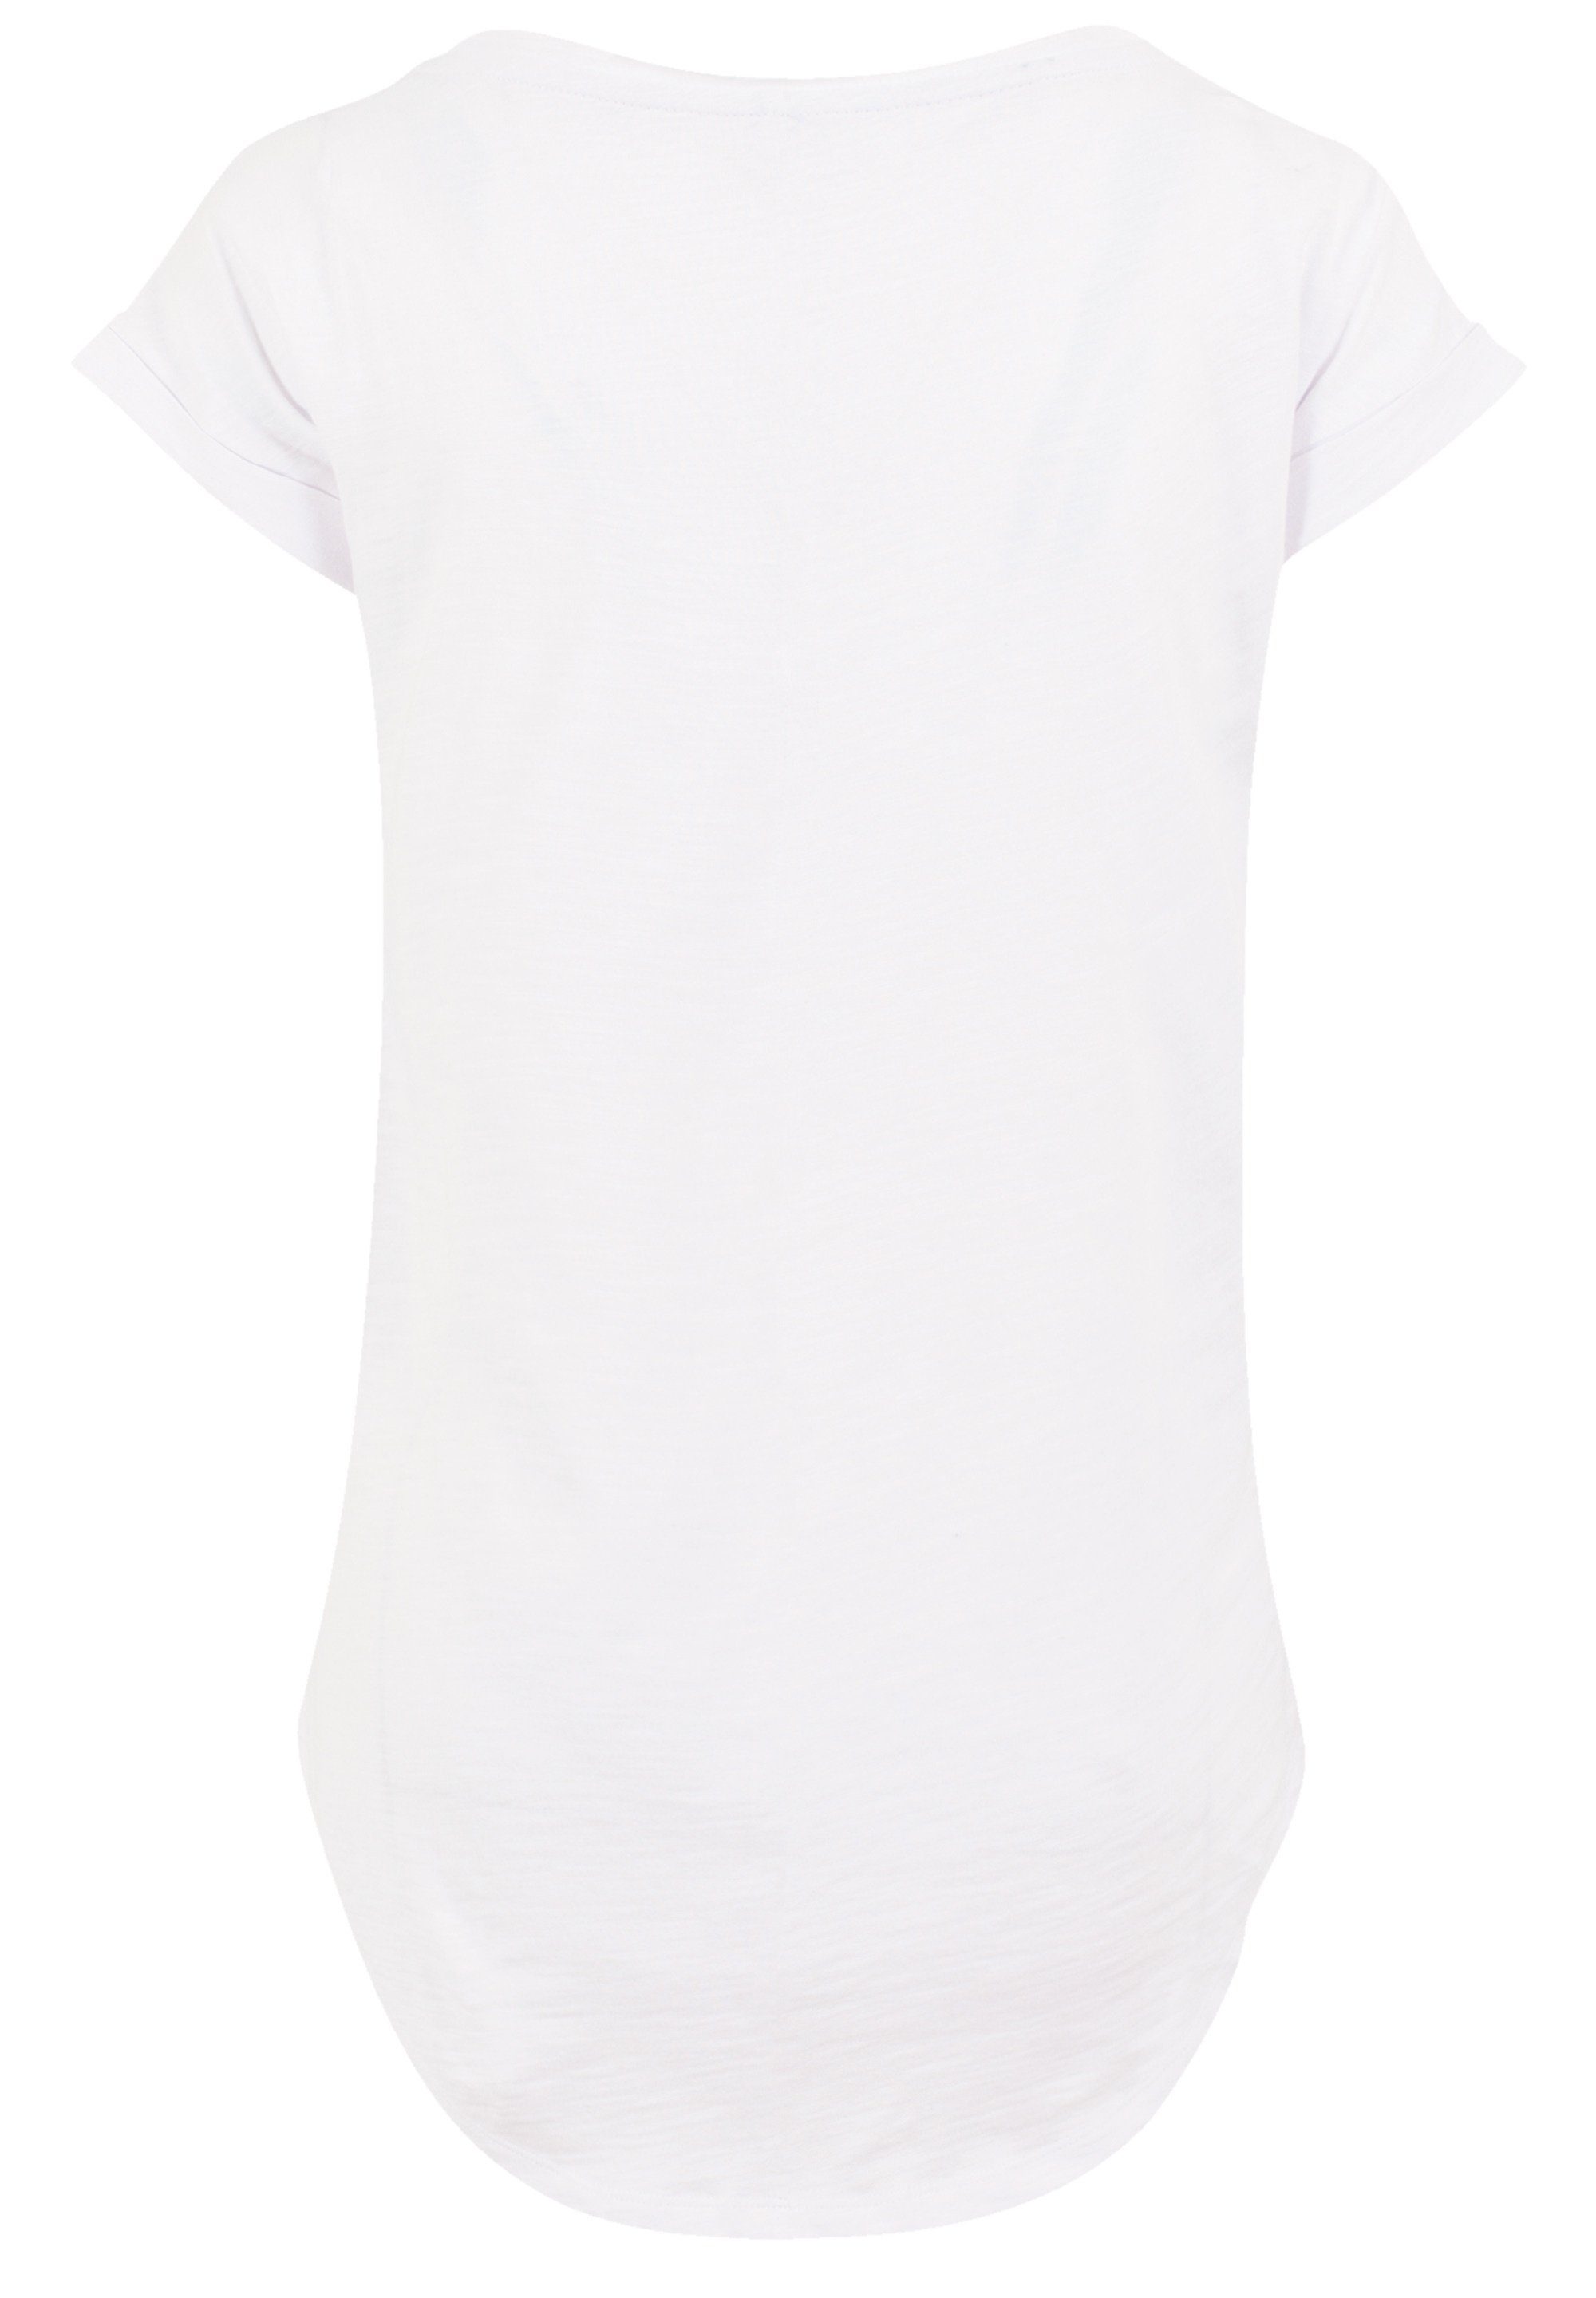 F4NT4STIC T-Shirt Disney Peter Pan 1967 Premium Qualität, Hinten extra lang  geschnittenes Damen T-Shirt